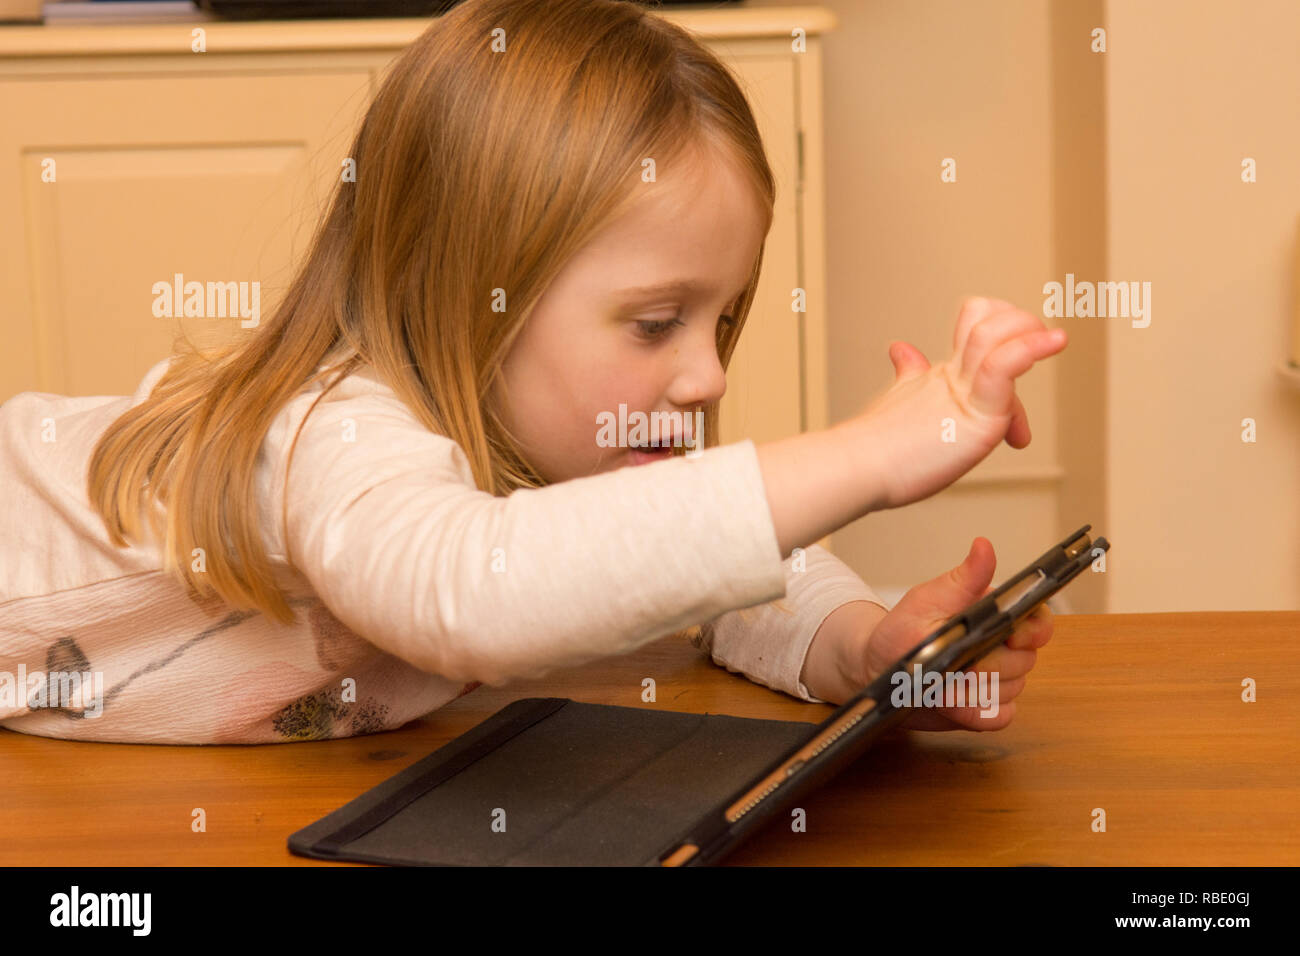 Ragazza giovane giocando con una pastiglia, dispositivo digitale, iPad schermo, bimbo di tre anni Foto Stock